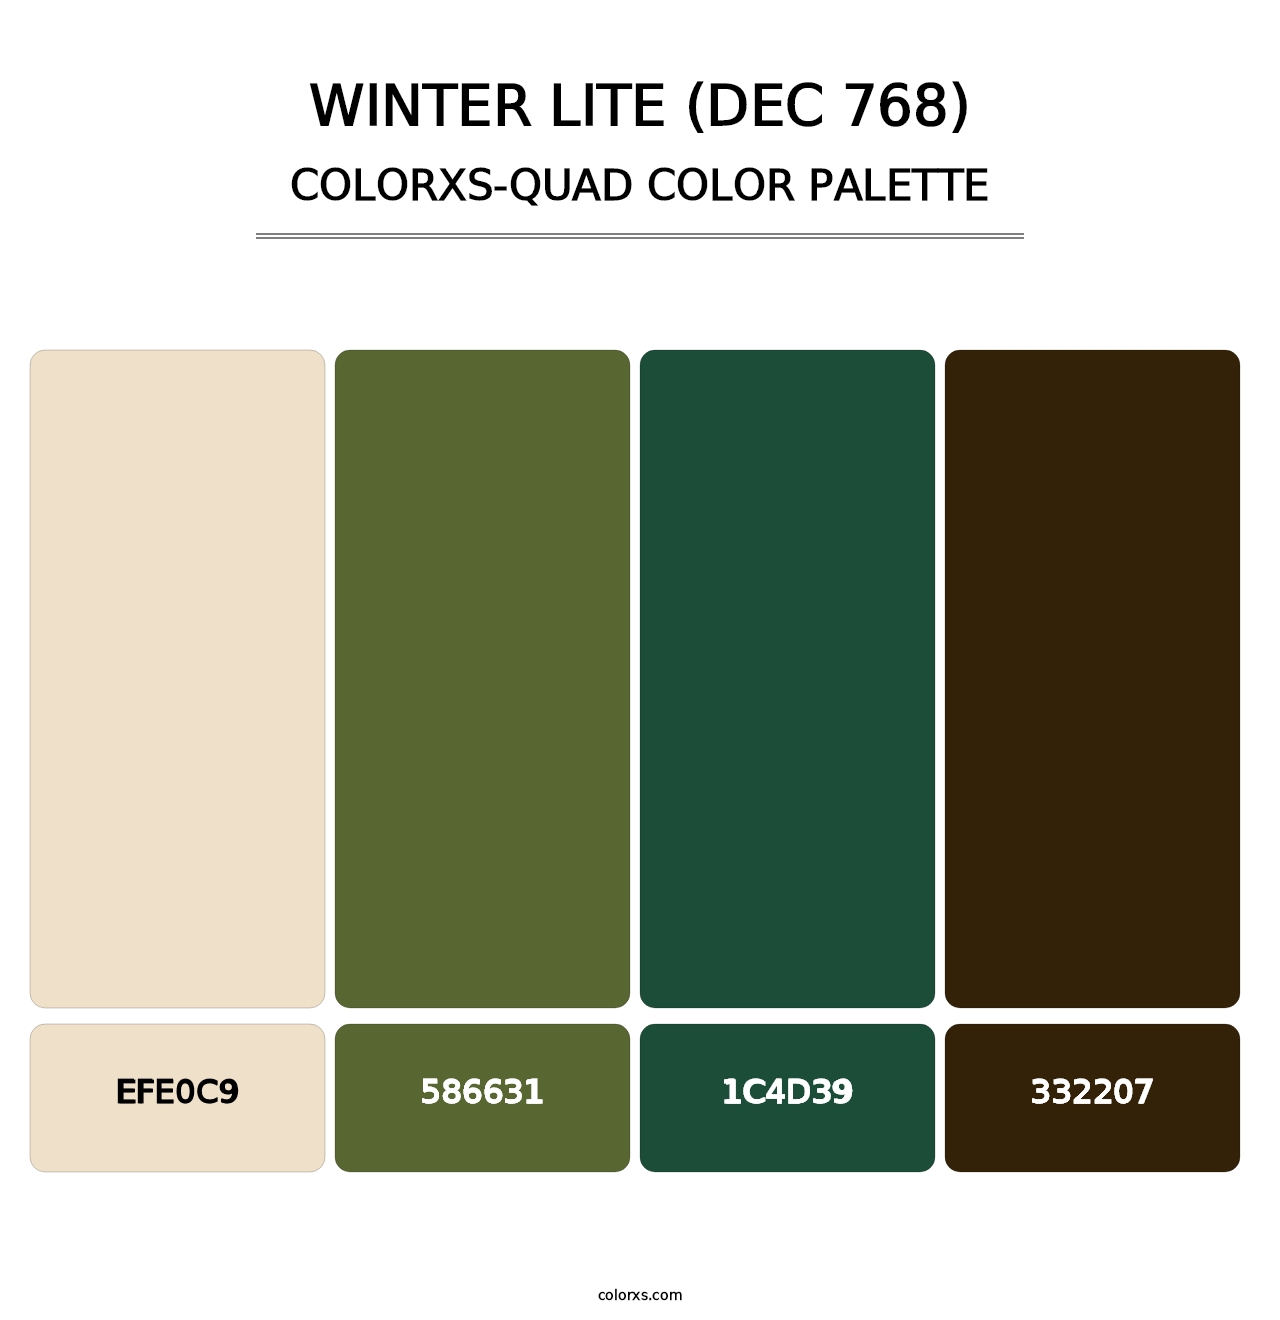 Winter Lite (DEC 768) - Colorxs Quad Palette